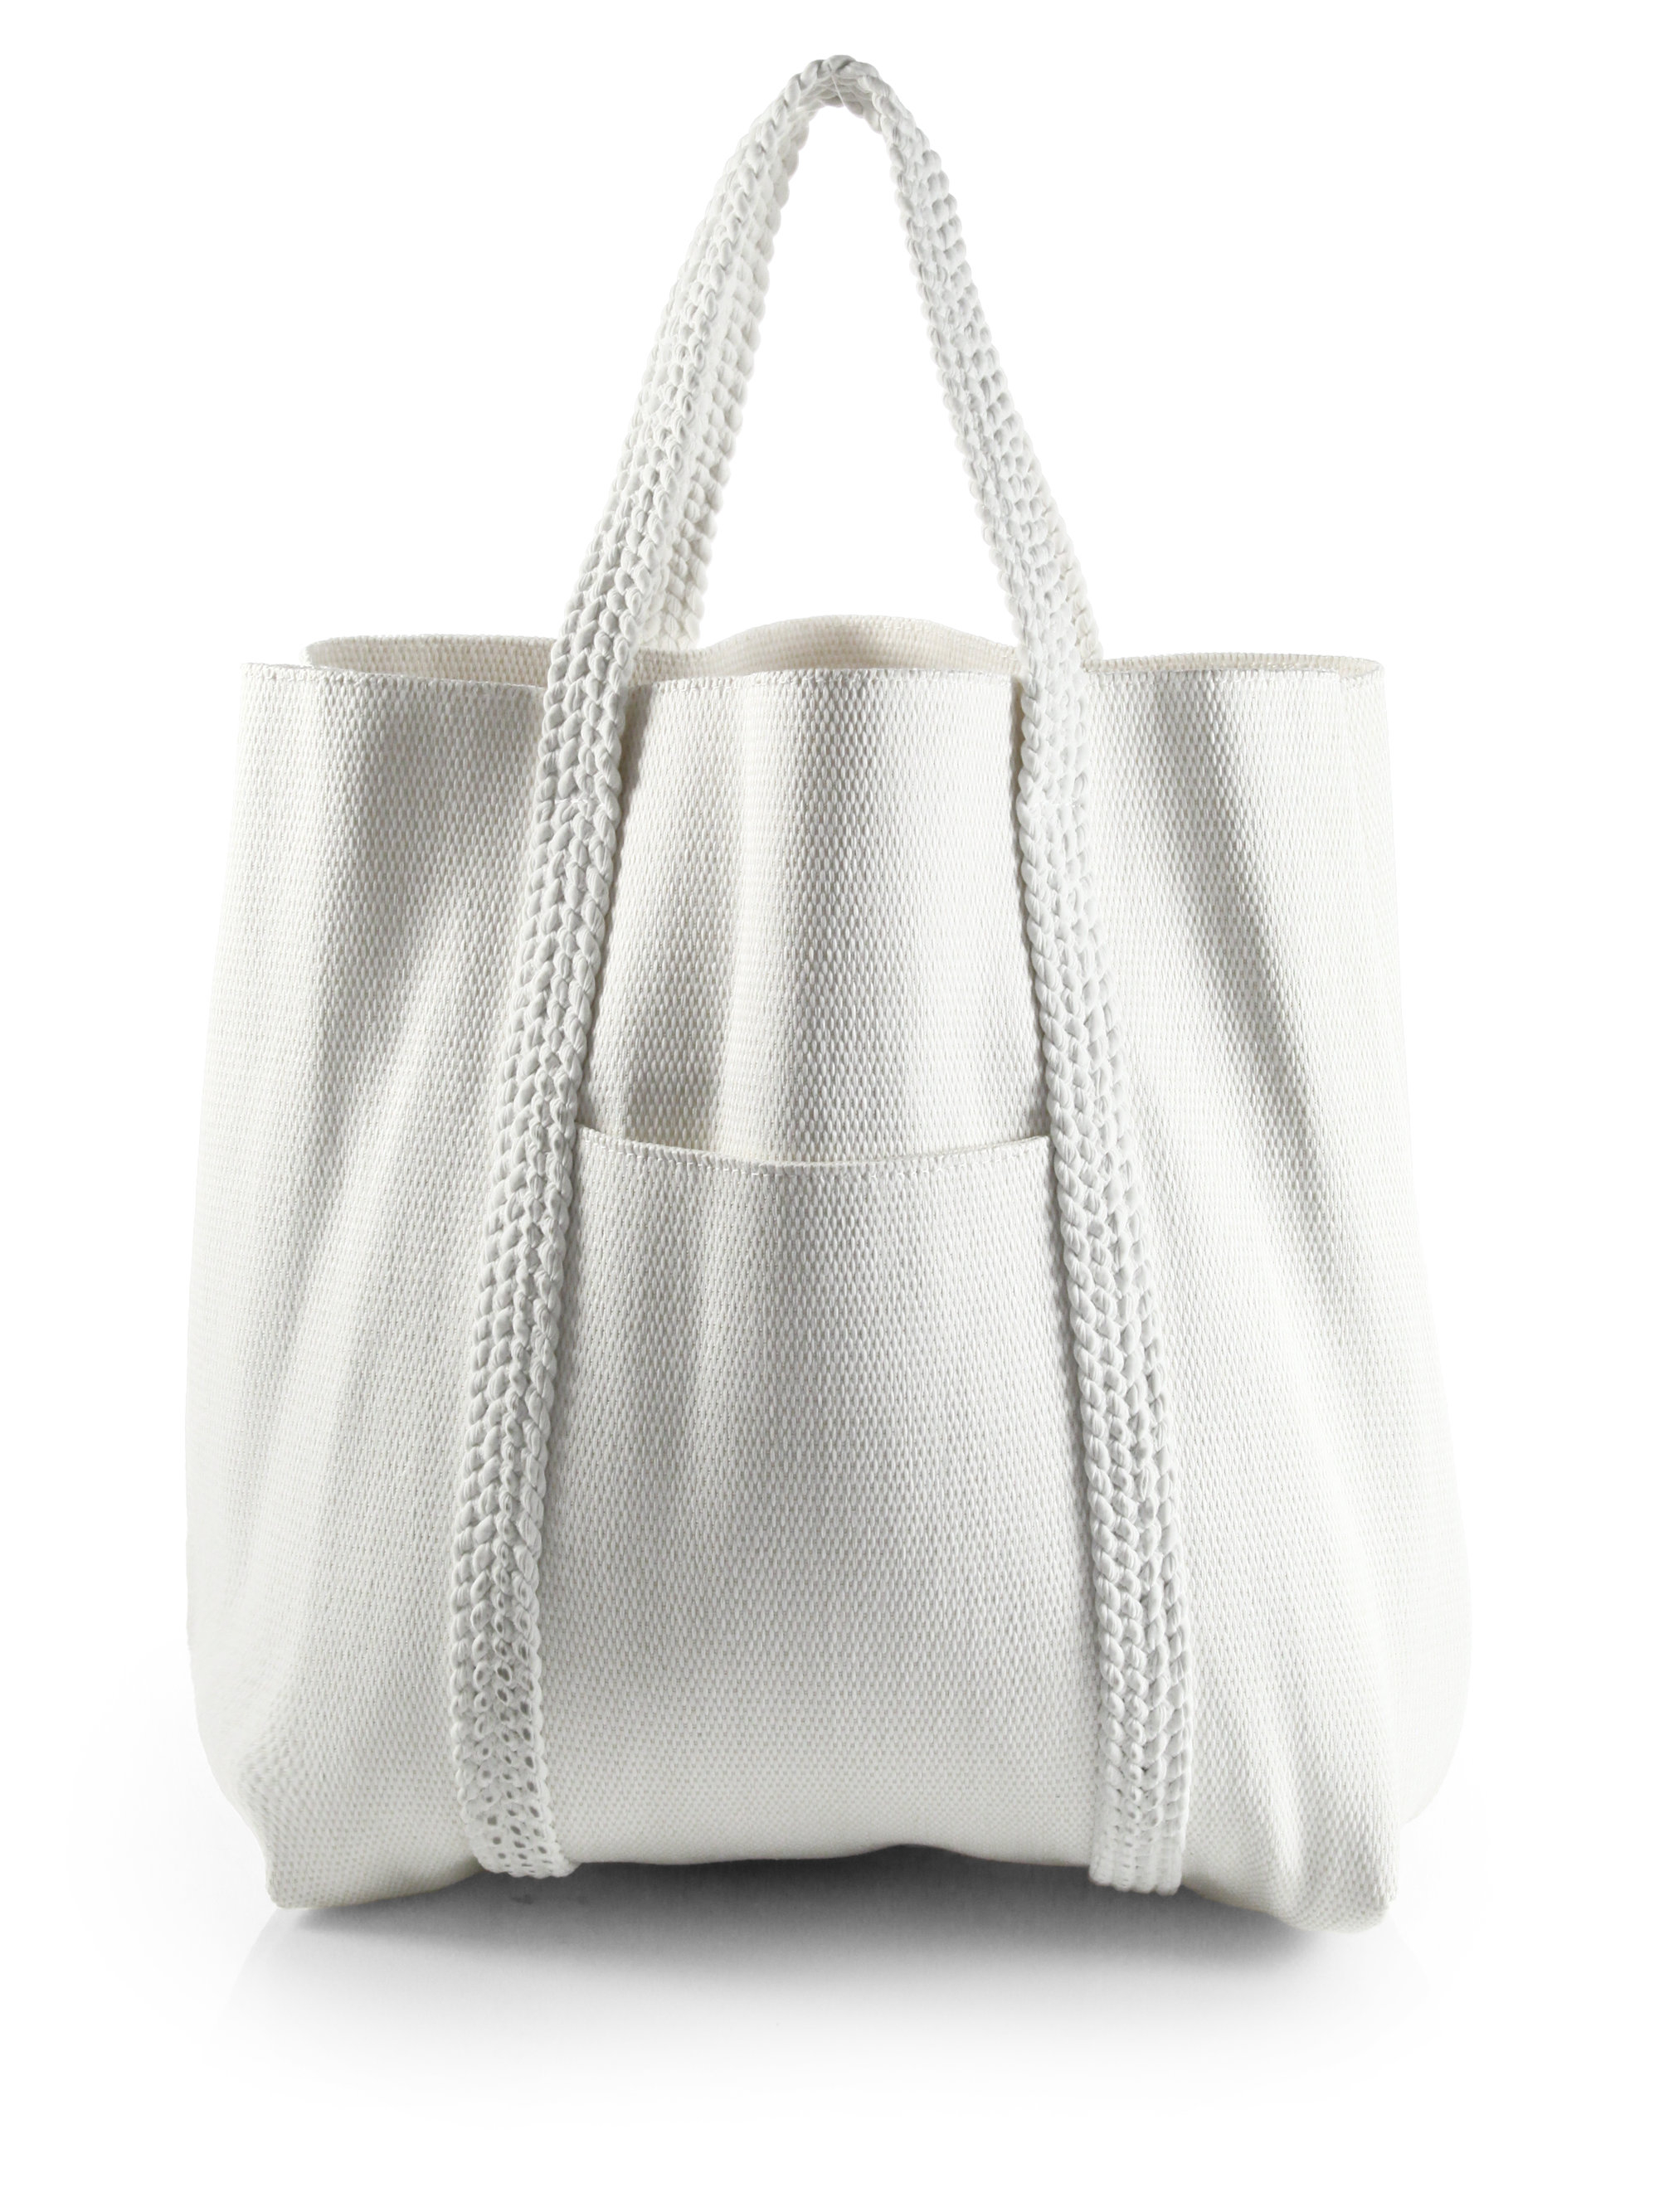 Pearl Canvas Resort Bag | Tote Handbag | Beach Bag